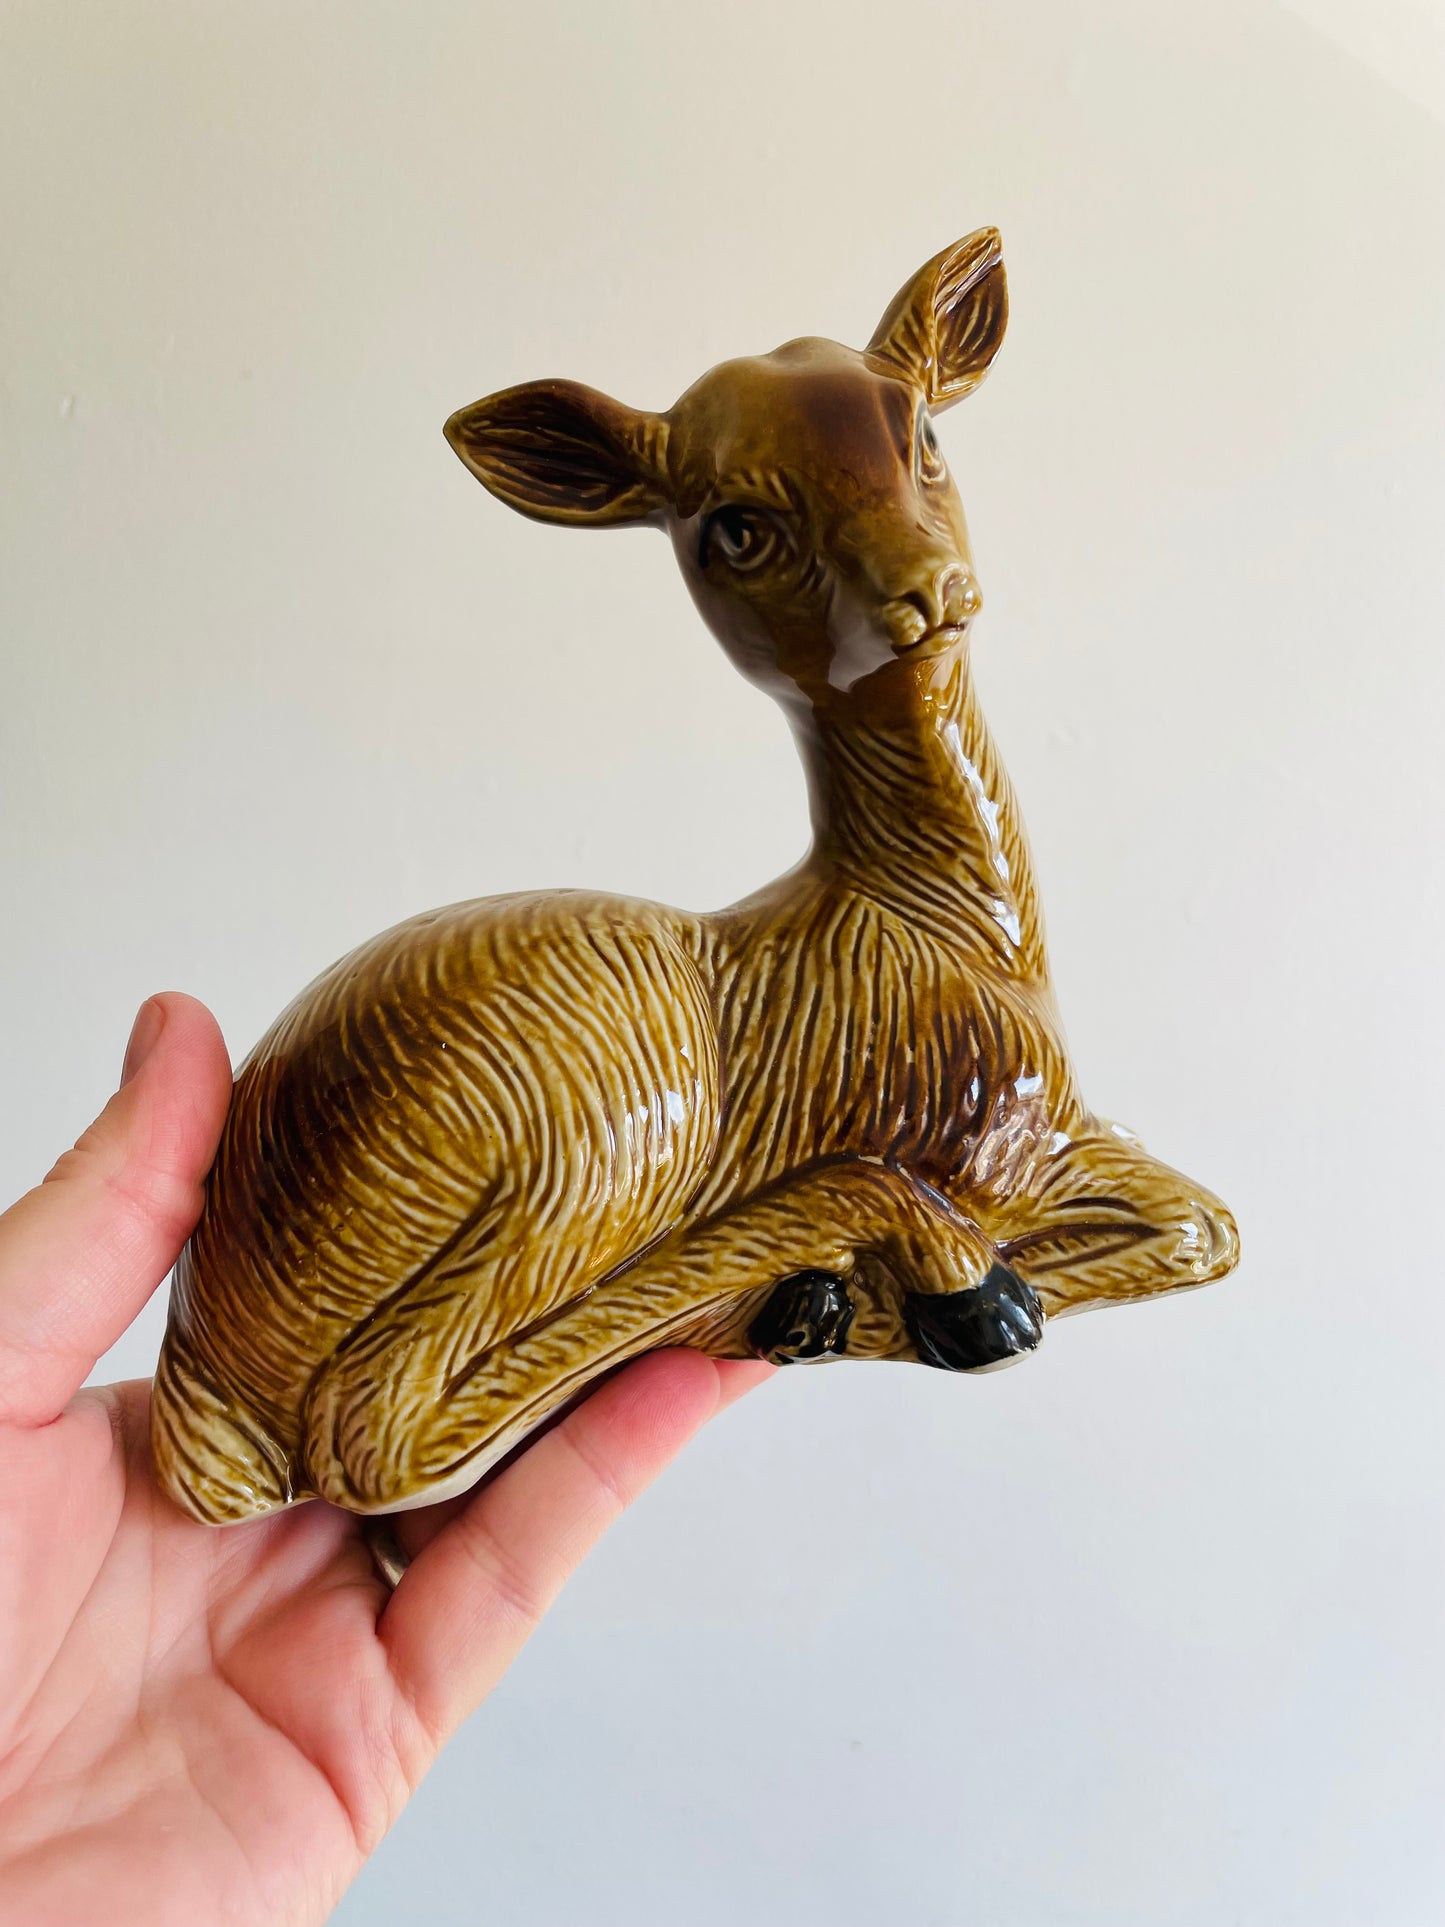 Ceramic Fawn Deer Figurine - Made in Brazil